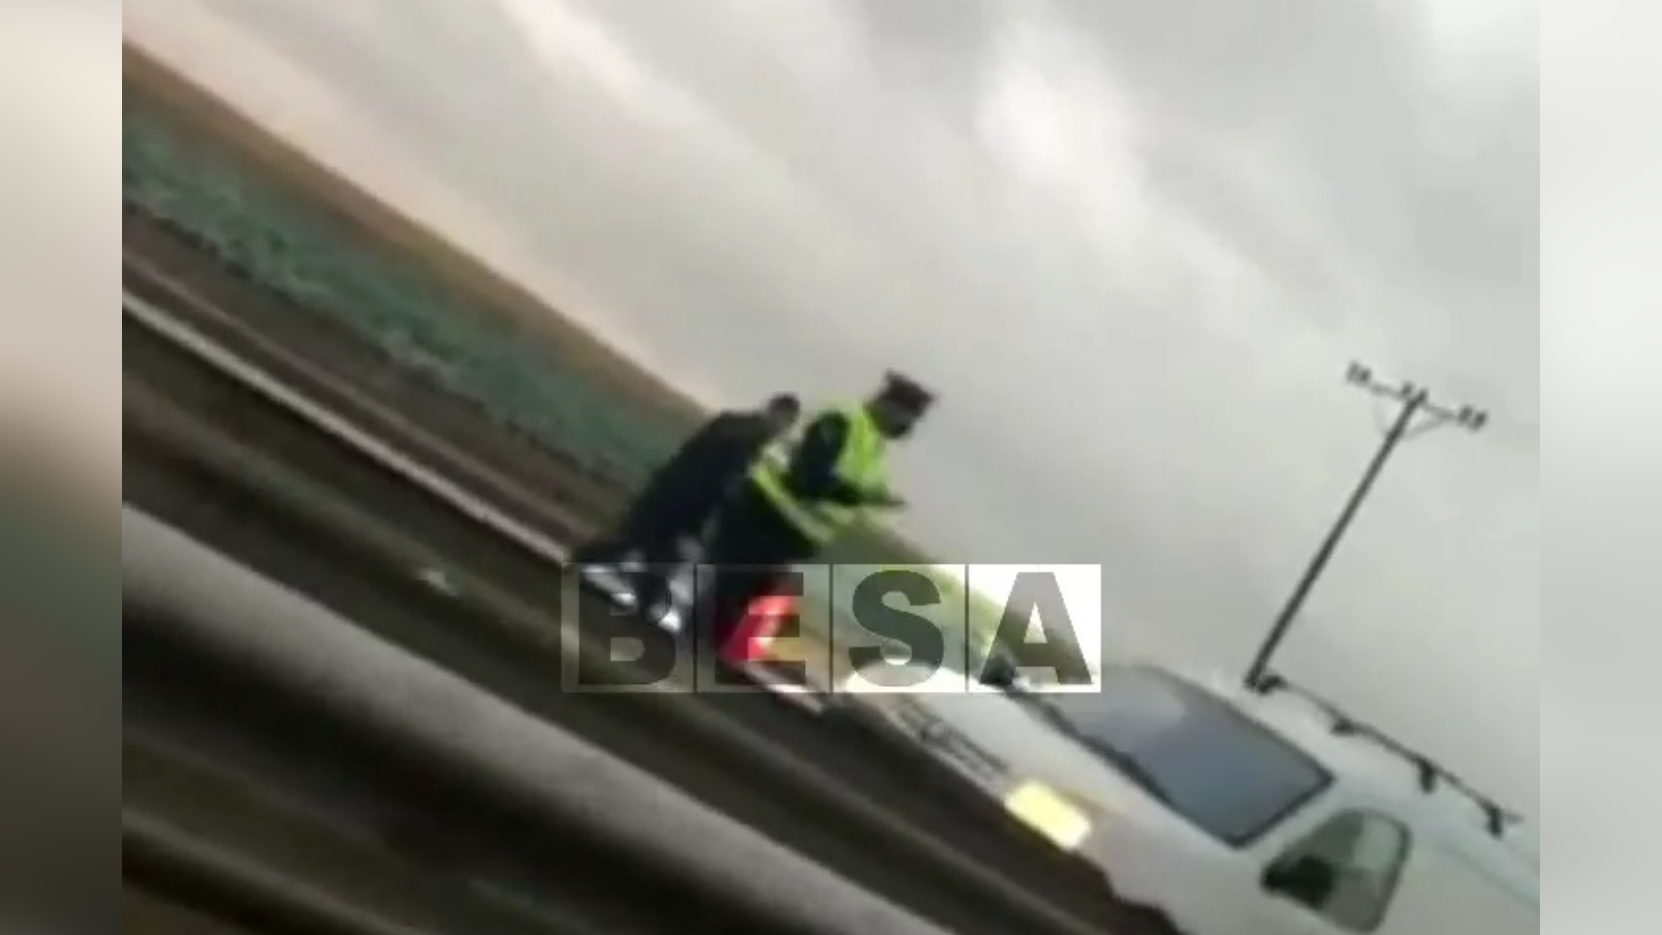 Gjashtë aksidente trafiku të ndryshme në autostradë! (VIDEO)